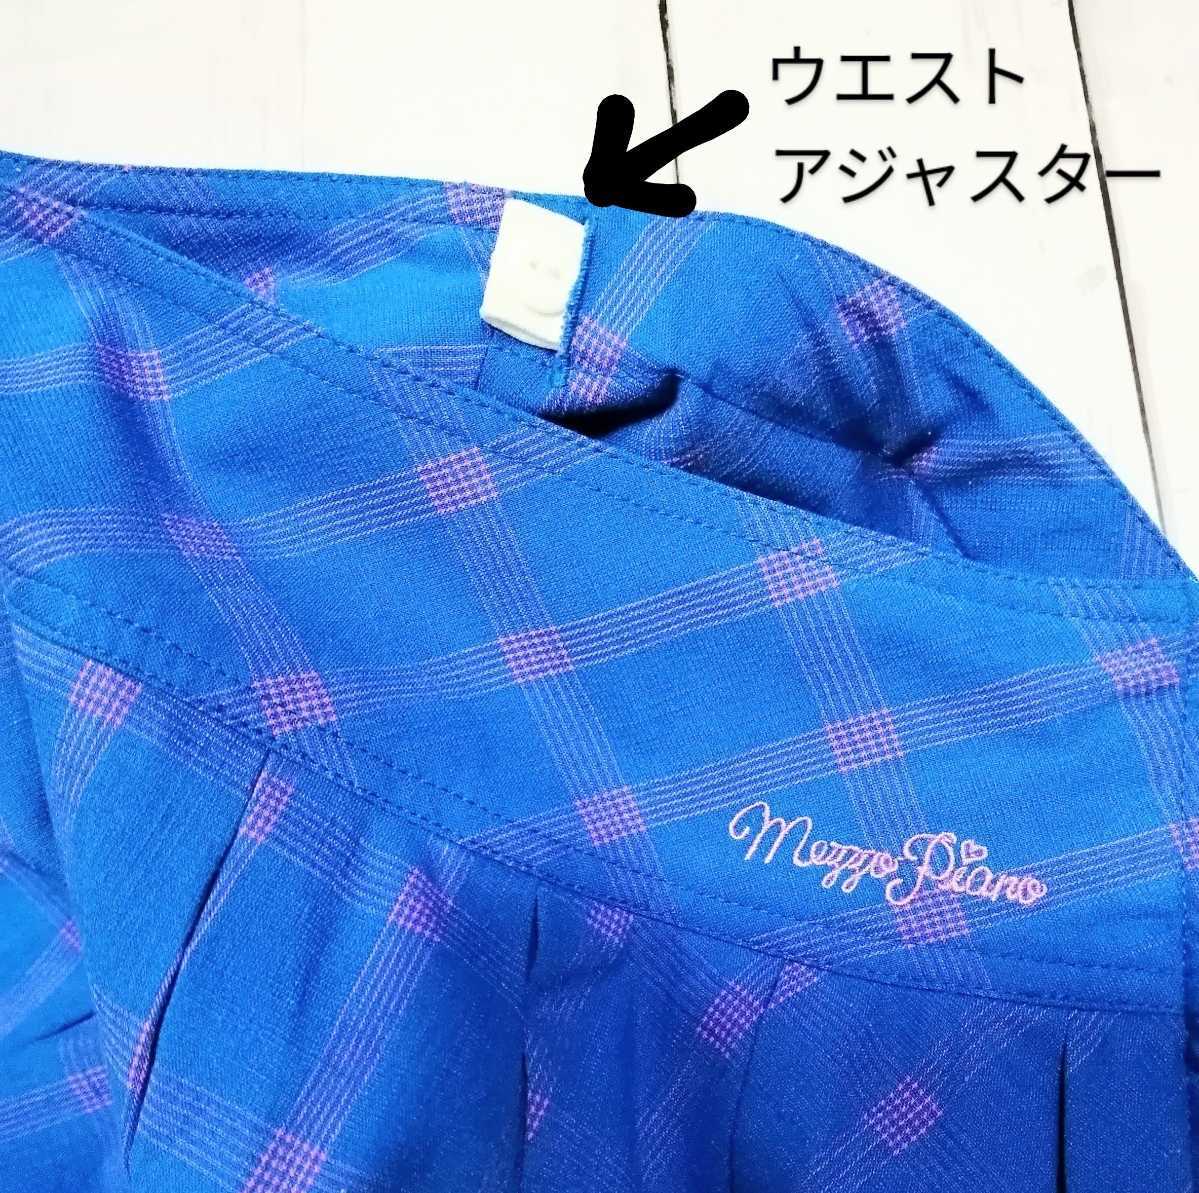 「mezzo piano ブルー×ピンク チェック柄ボックスプリーツスカート（インナーパンツ付）160 L」ポンポネット シャーリーテンプル多数出品_画像5